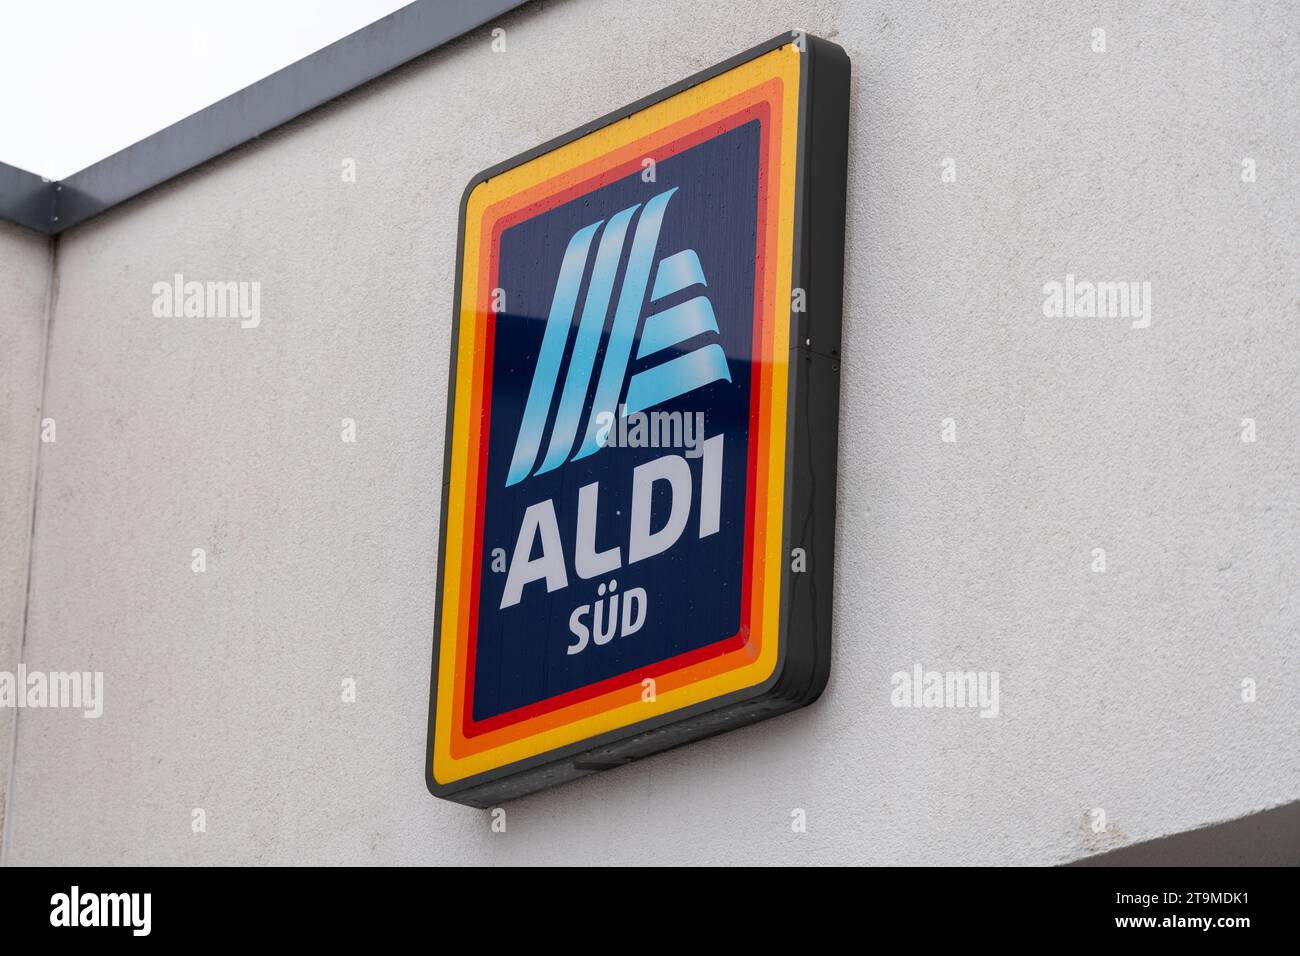 Parsdorf, Bavière, Allemagne - 26 novembre 2023 : Aldi Süd discounter alimentaire et logo de supermarché *** Aldi Süd Lebensmittel discounter und Supermarkt logo crédit : Imago/Alamy Live News Banque D'Images